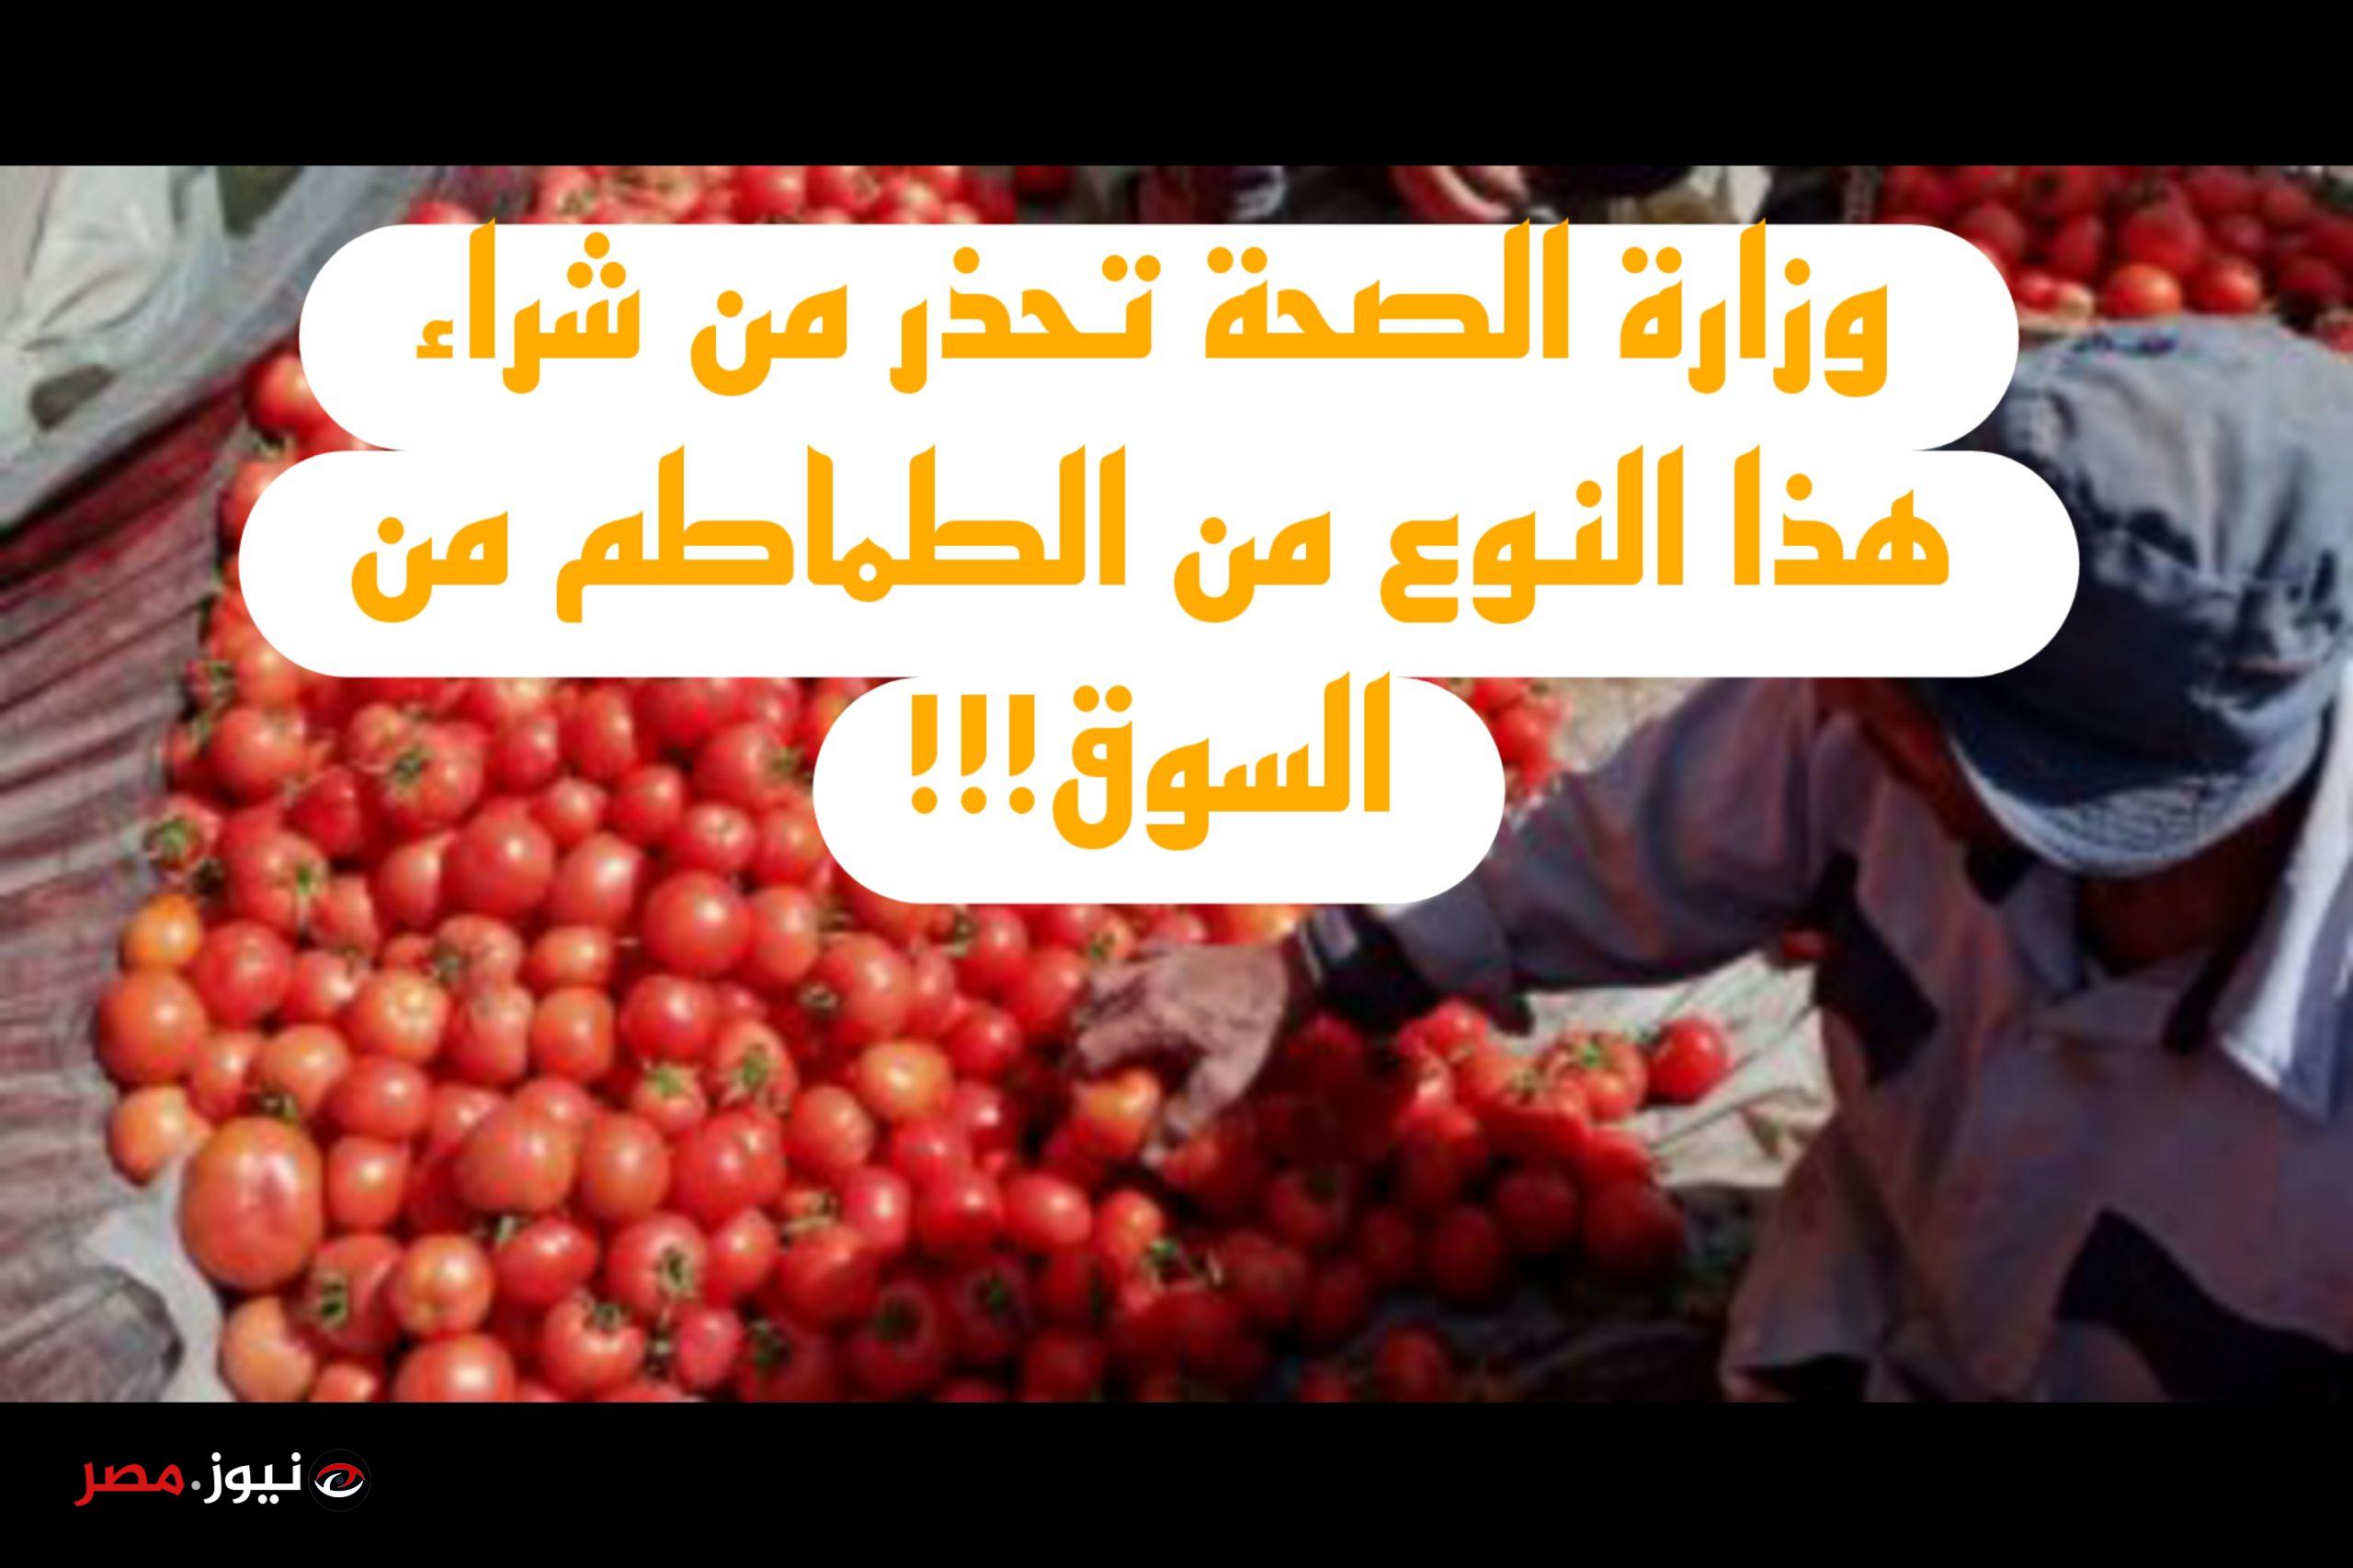 لماذا حذرت وزارة الصحة من هذا النوع من الطماطم؟